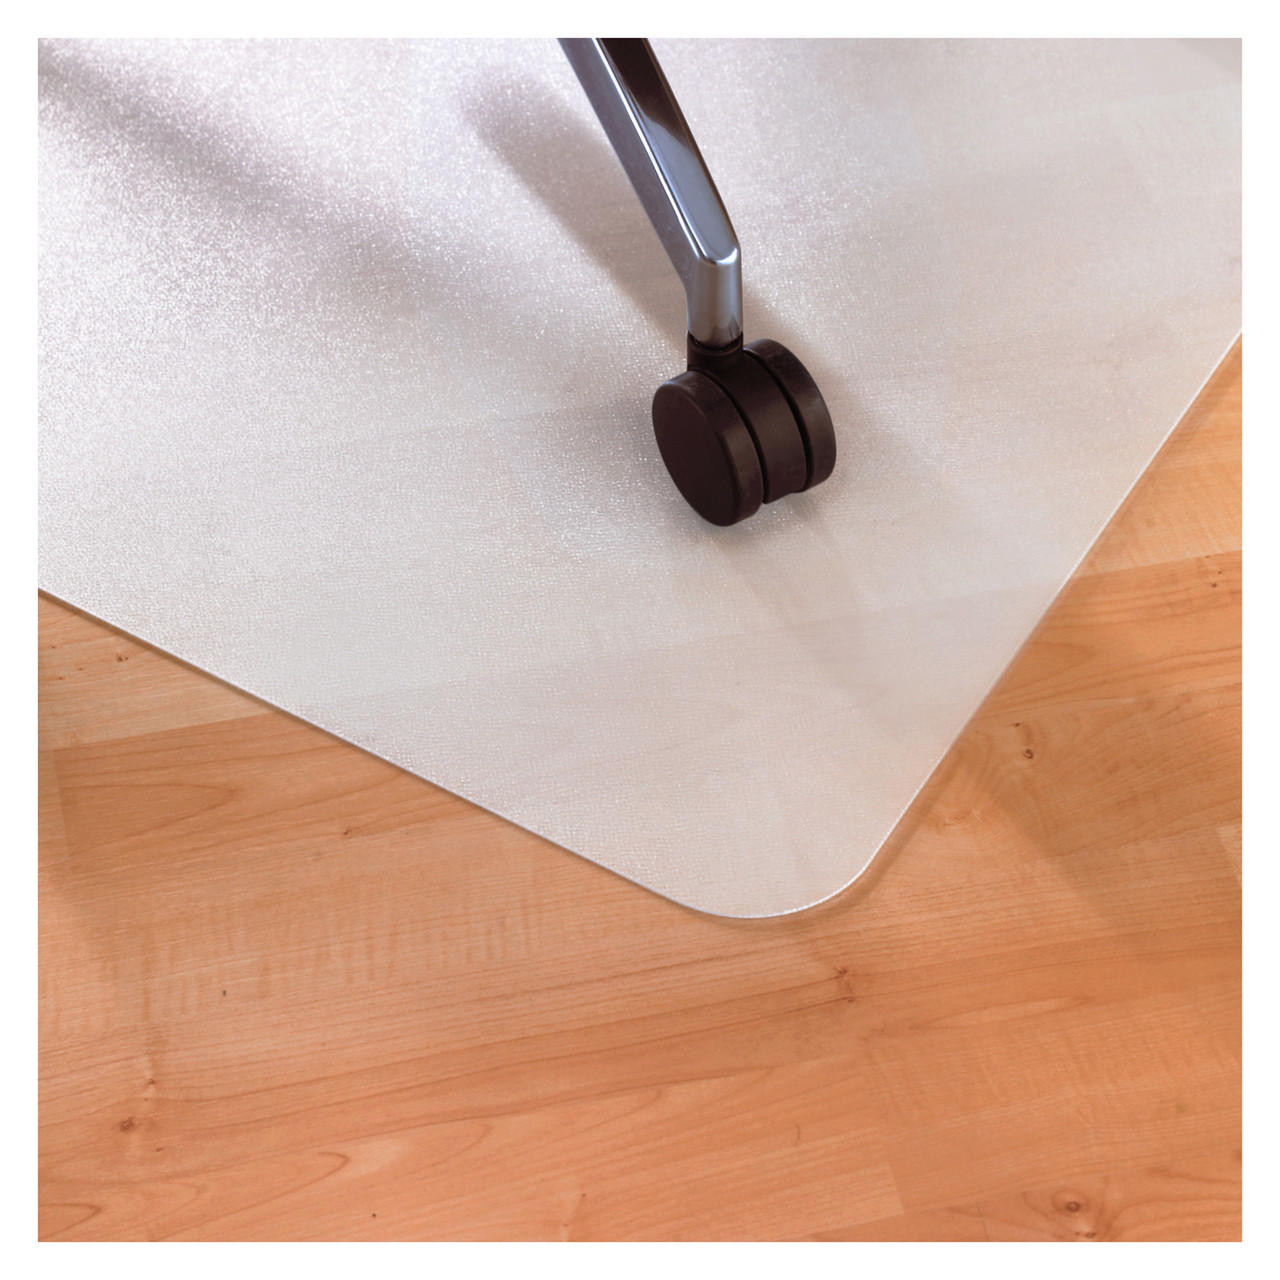 Marvelux Anti-Slip Polypropylene Chair Mat for Hard Floors 29 x 46 |  White Office Floor Protector with Non-Slip Backing | Rectangular Floor